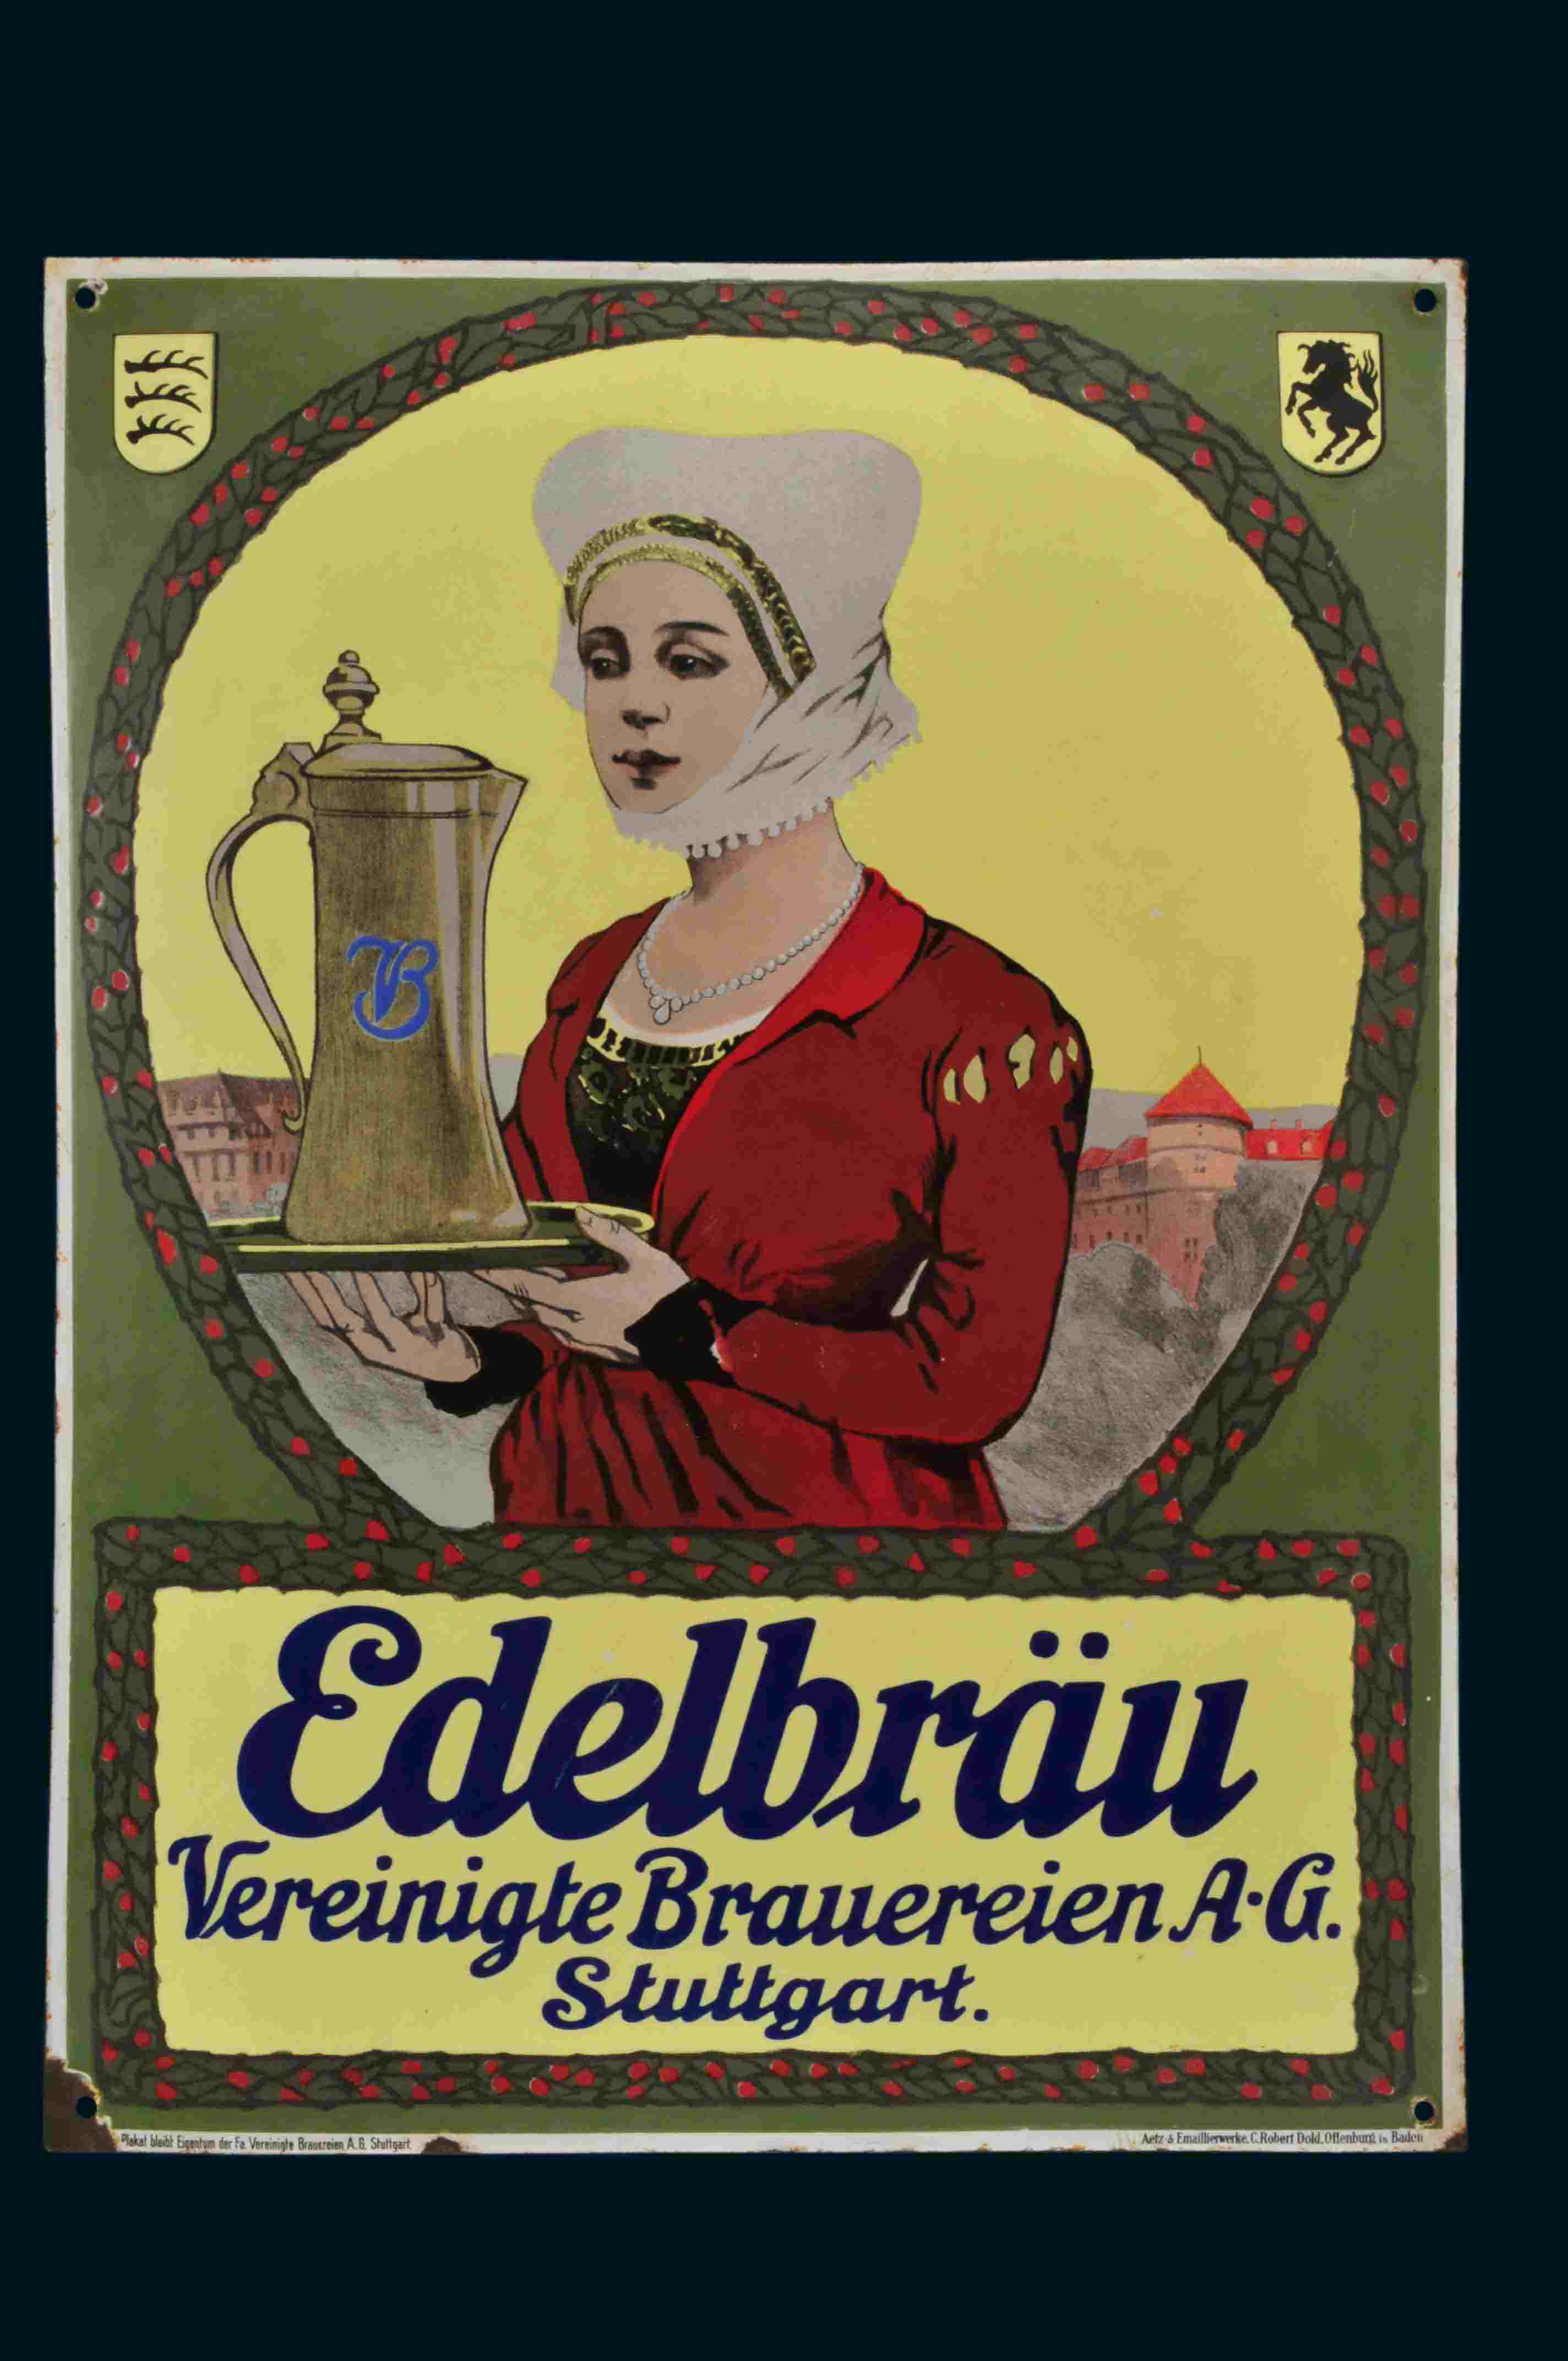 Edelbräu Vereinigte Brauereien A-G. 